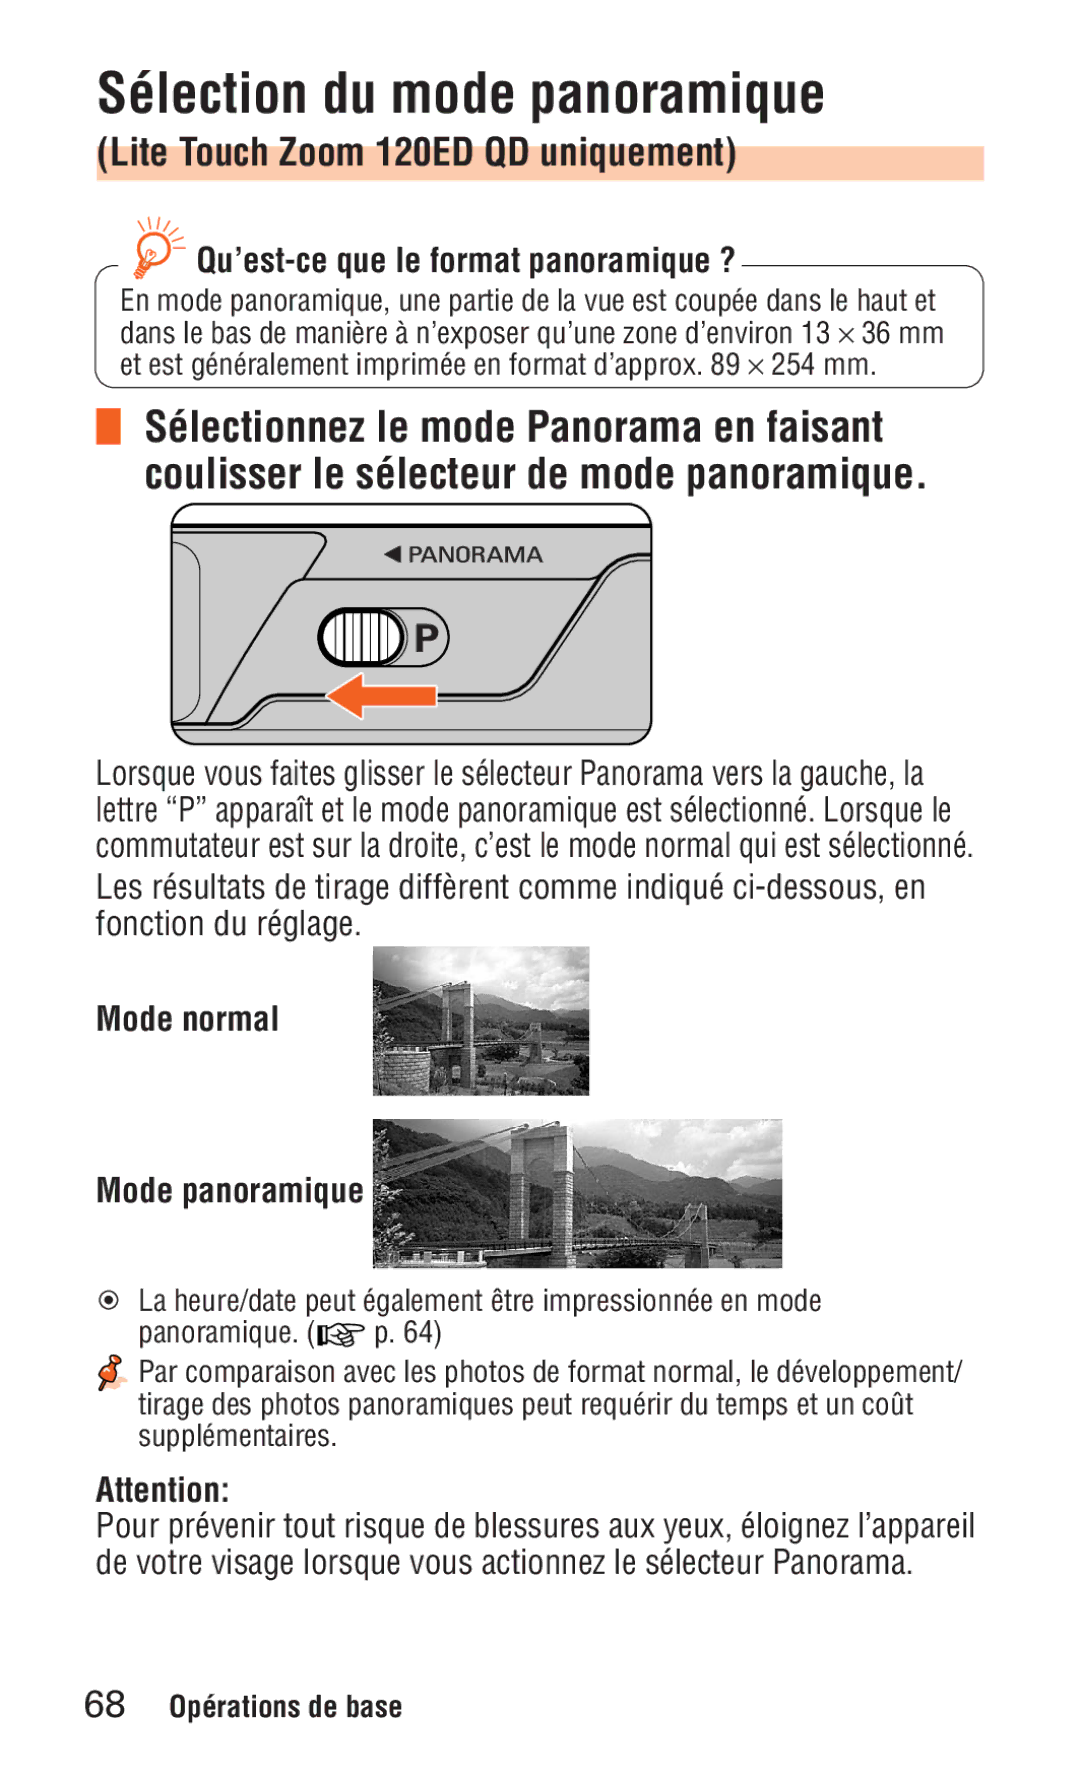 Nikon ED 120 Sélection du mode panoramique, Lite Touch Zoom 120ED QD uniquement, Qu’est-ce que le format panoramique ? 